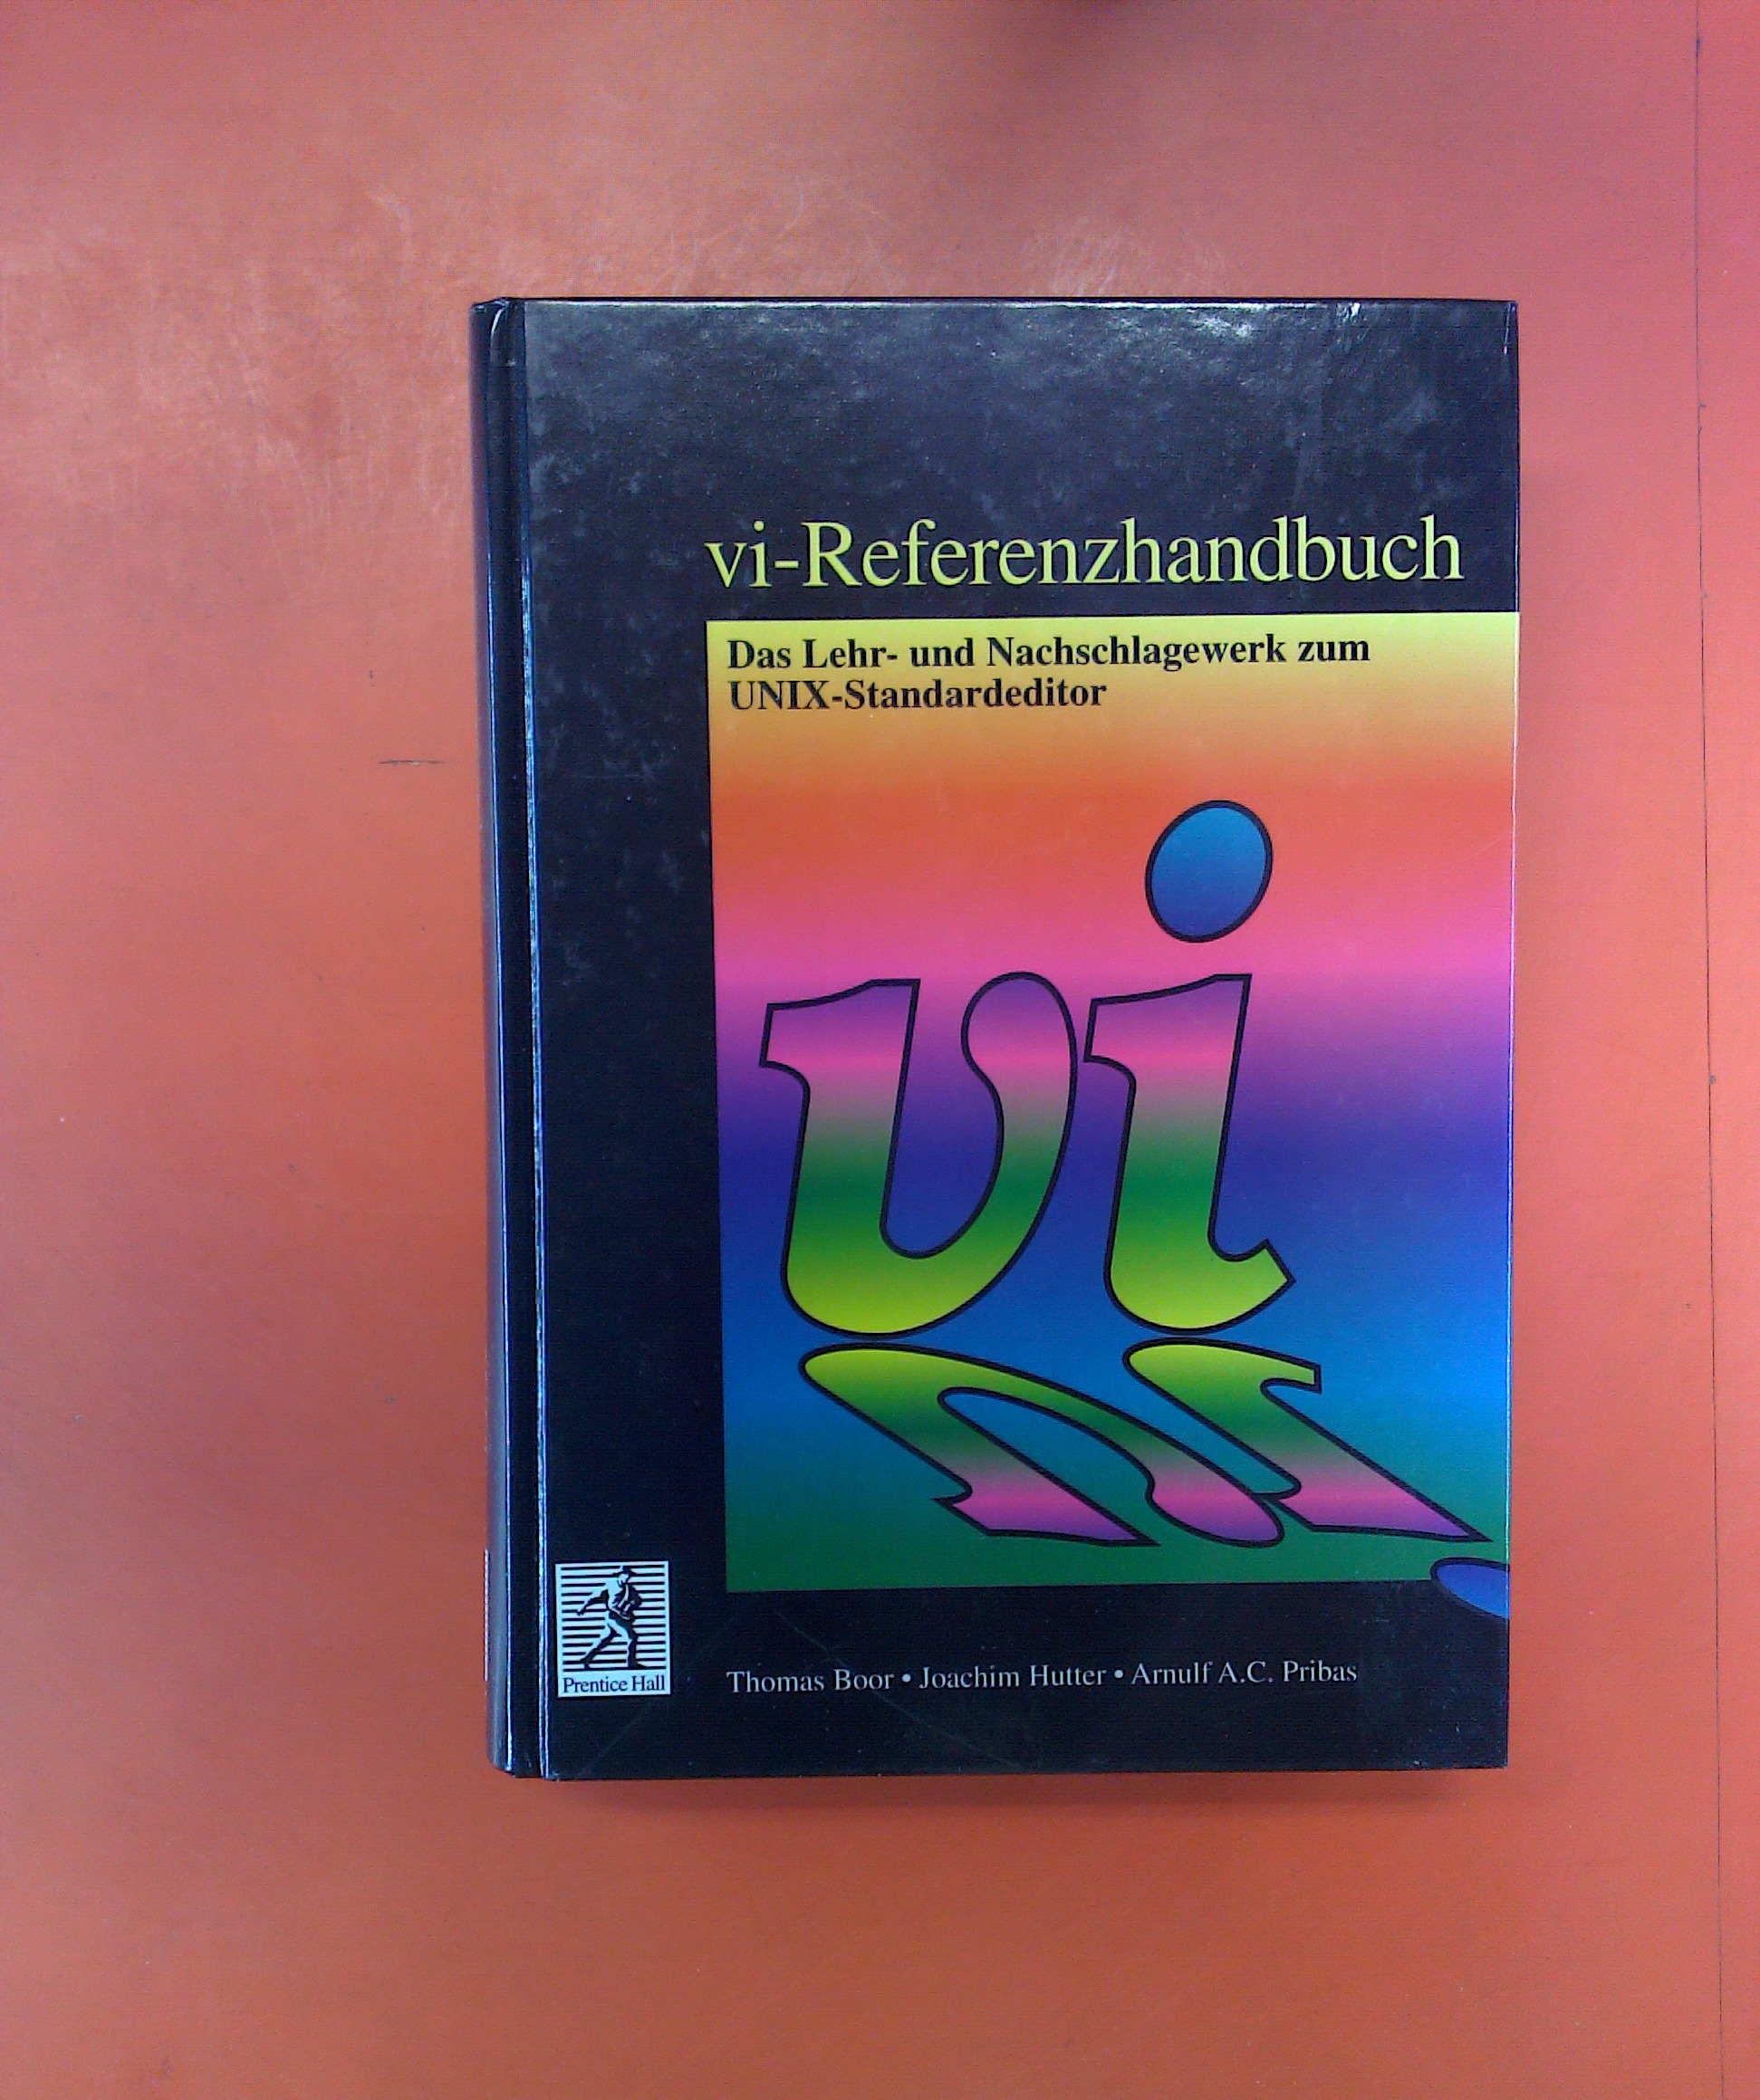 vi-Referenzhandbuch - Das Lehr- und Nachschlagewerk zum UNIX-Standardeditor - Autorenkollektiv